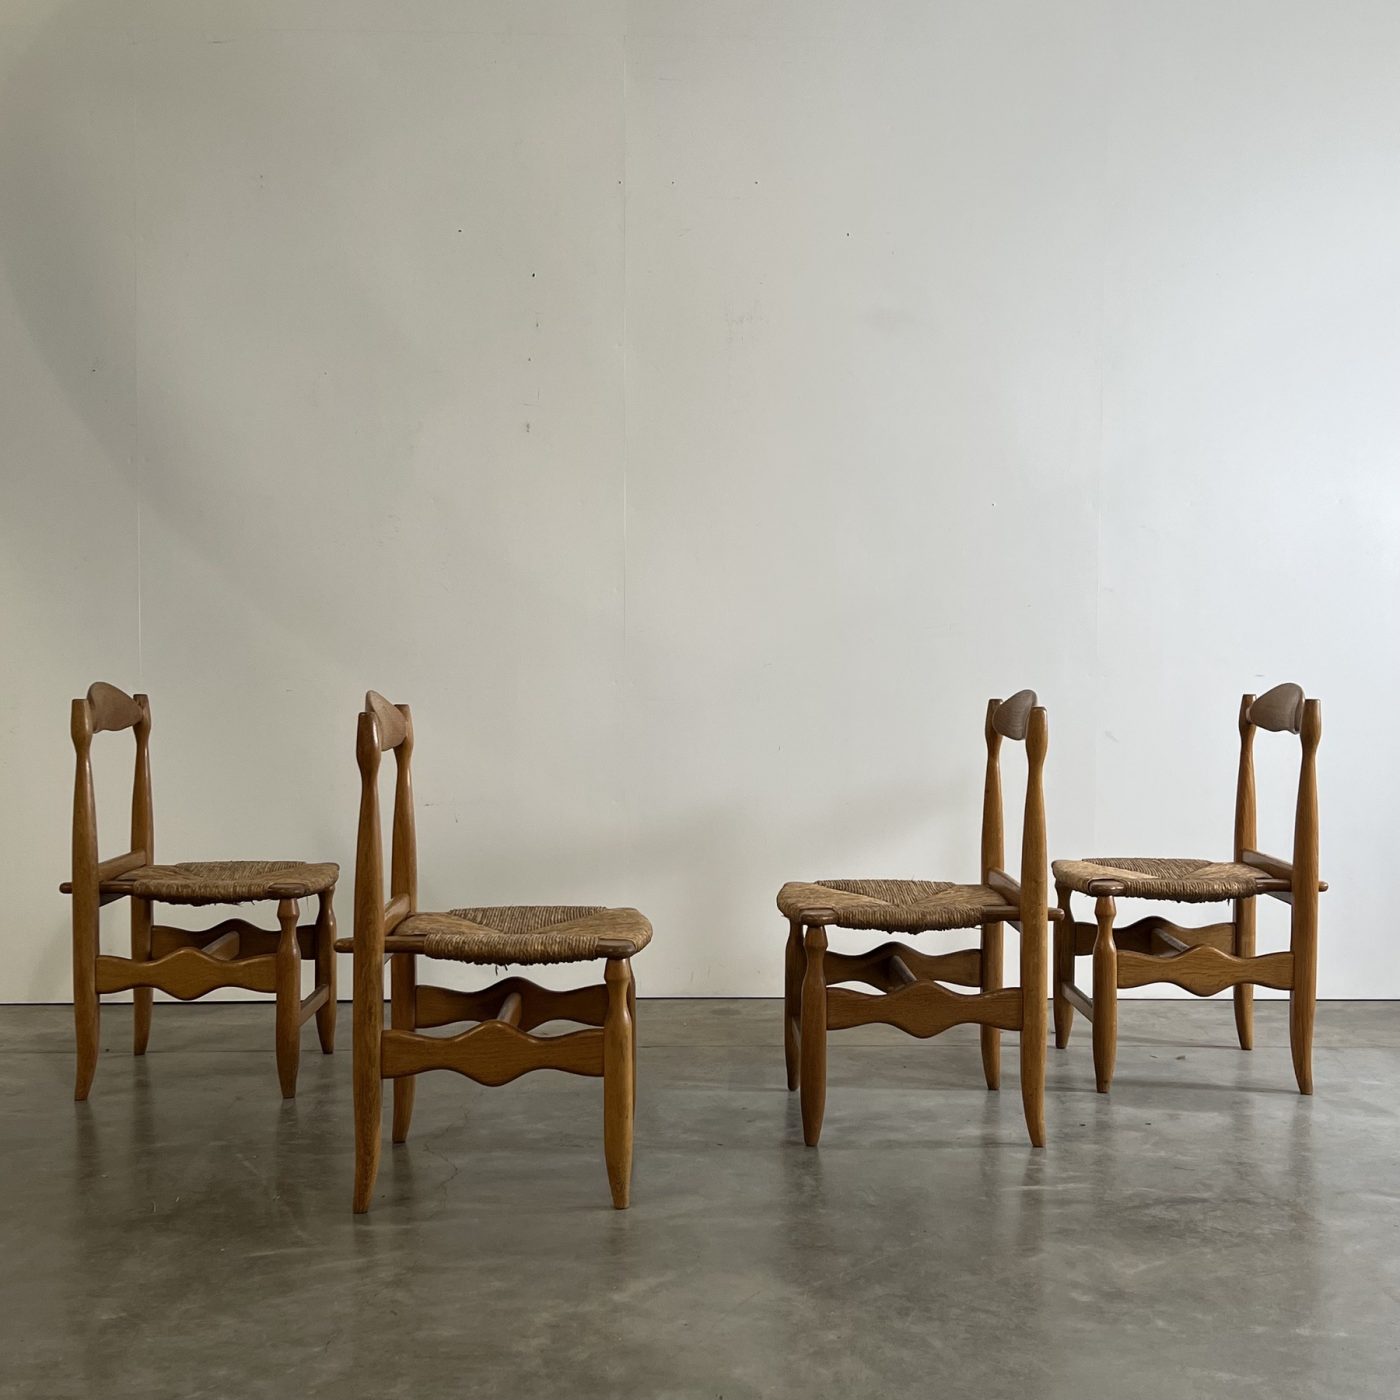 objet-vagabond-guillerme-chairs0004